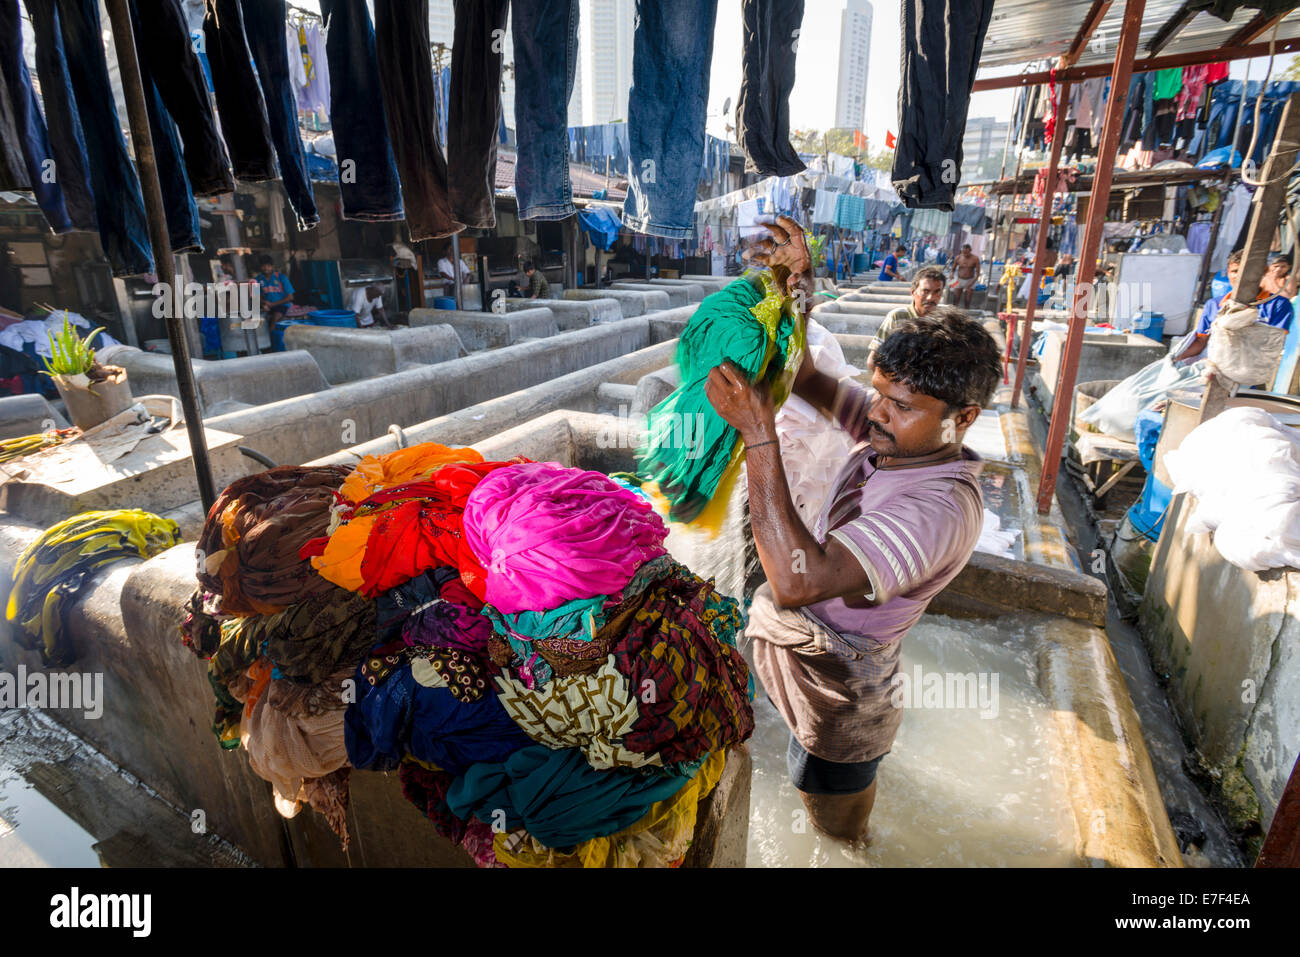 Labourer washing clothes at Mahalaxmi Dhobi Ghat, laundry district of Mumbai, Maharashtra, India Stock Photo